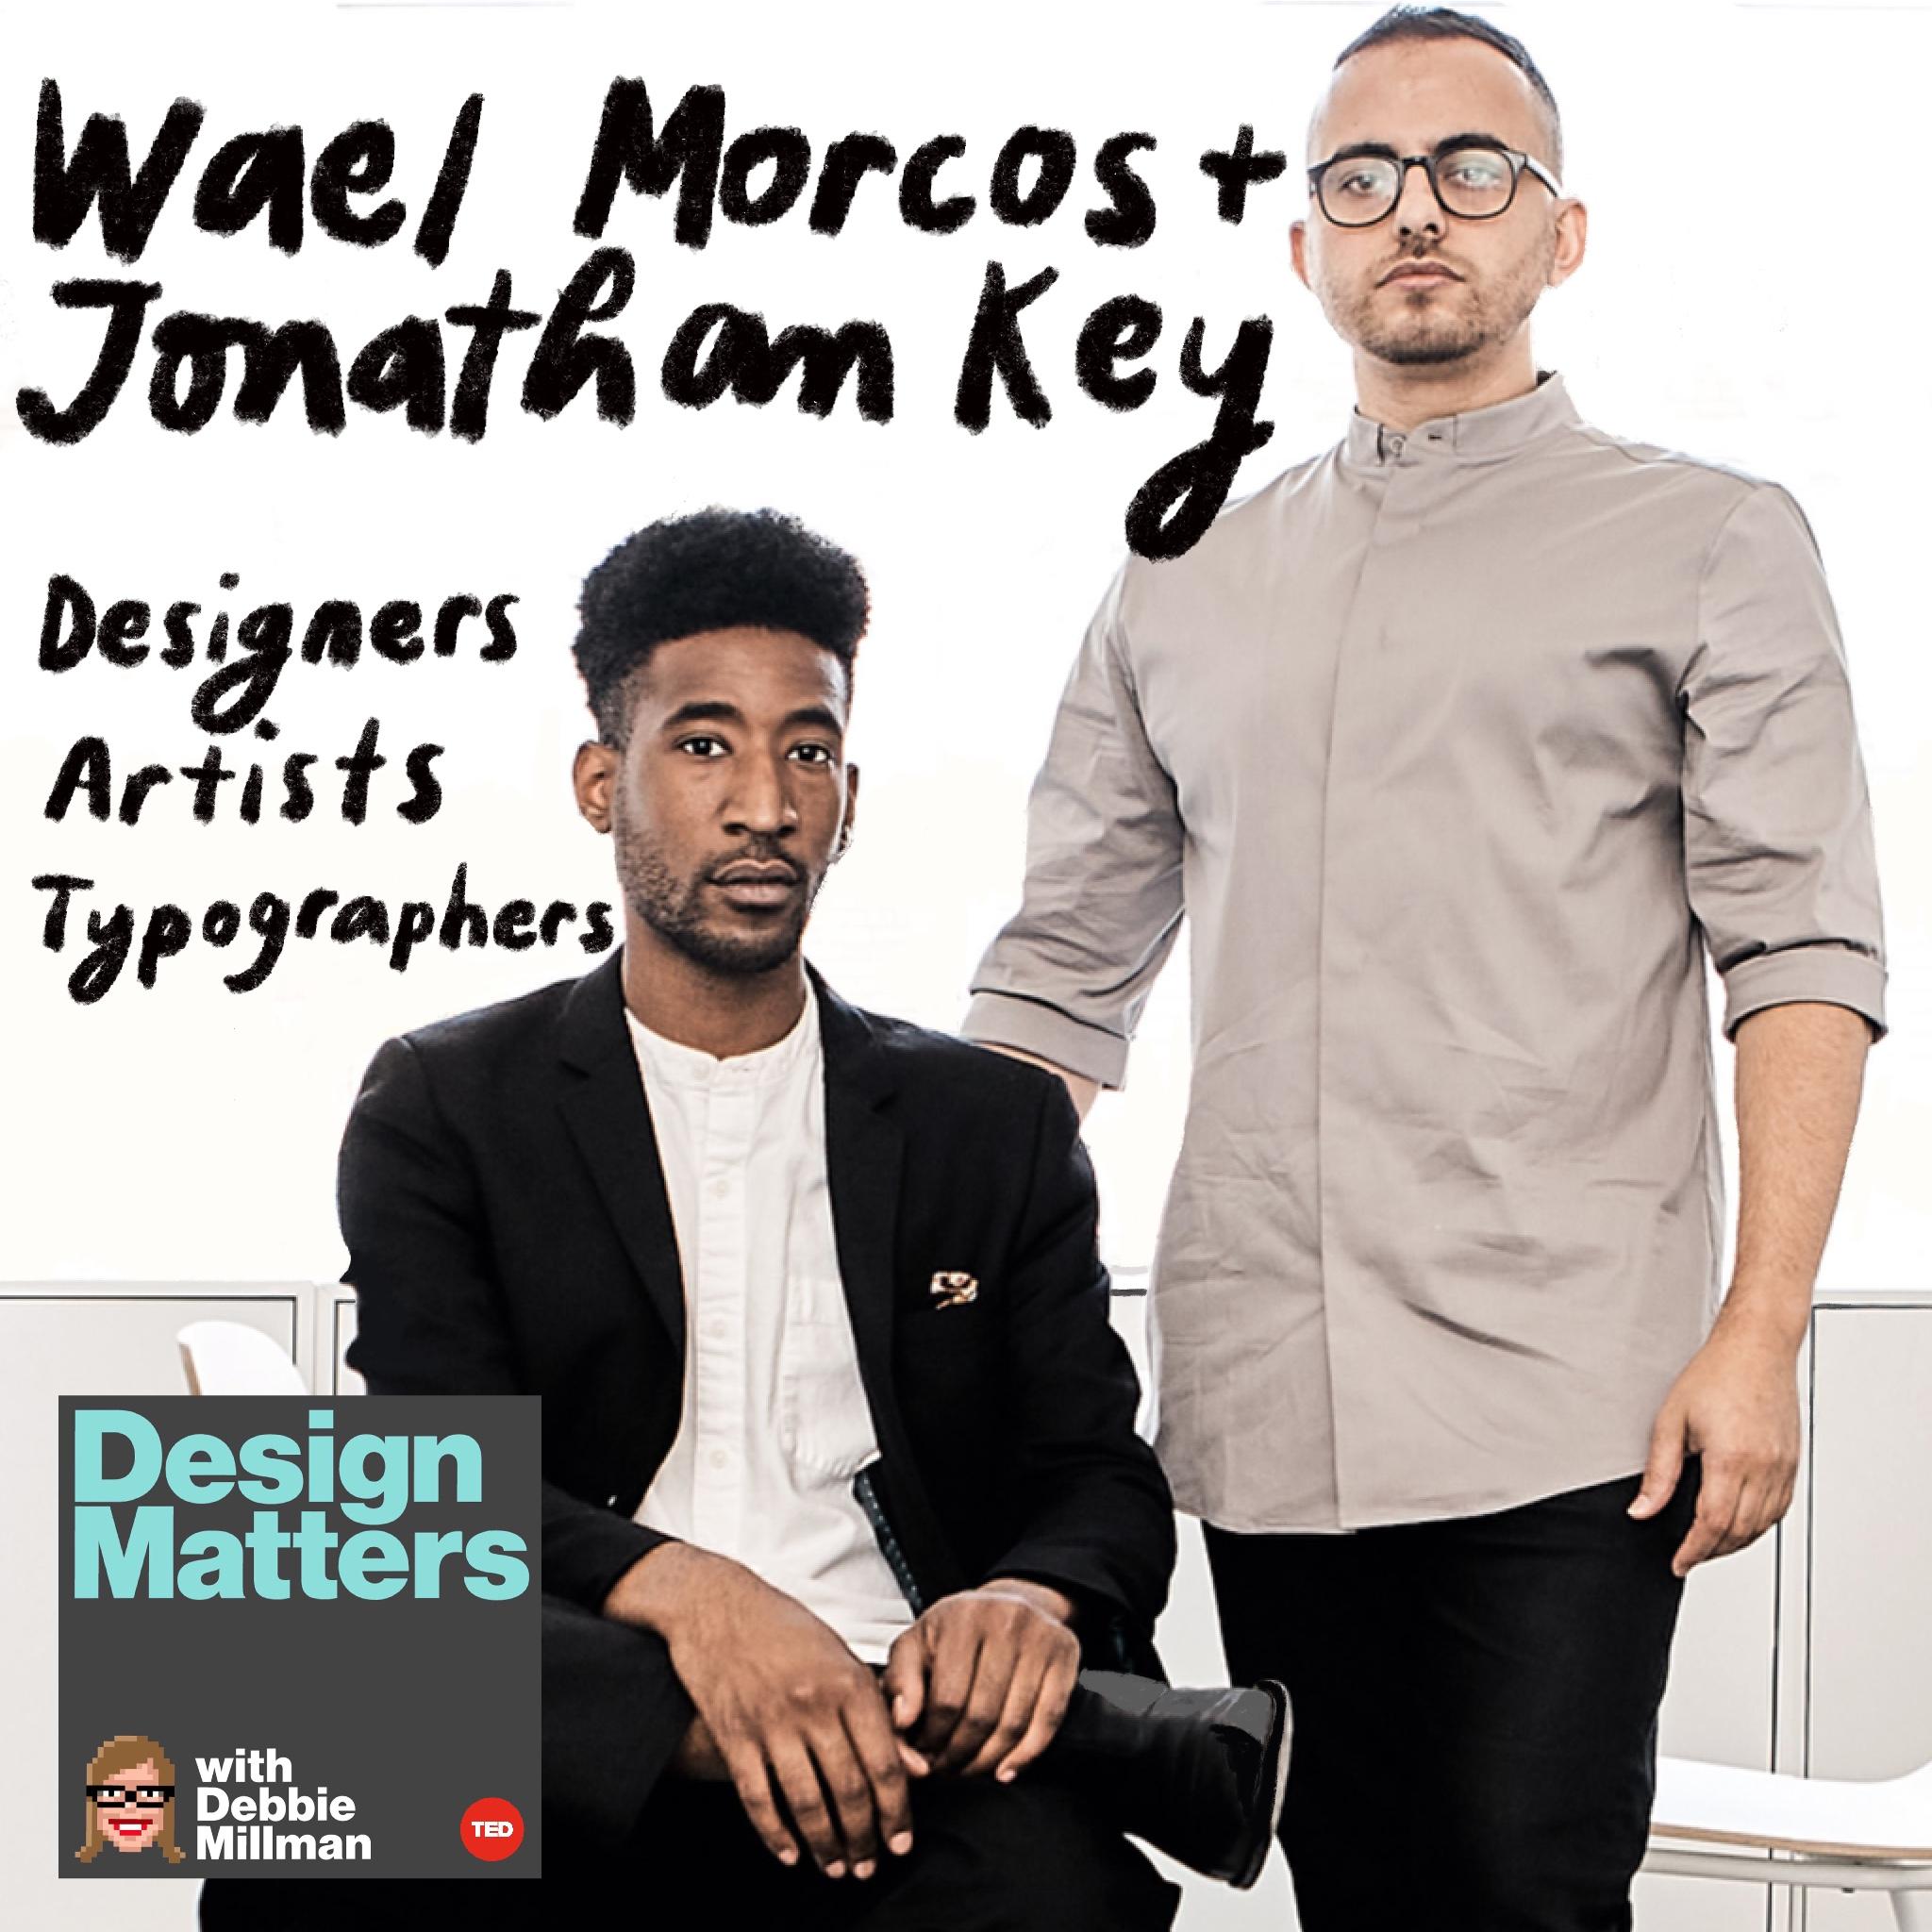 Thumbnail for "Wael Morcos & Jonathan Key".